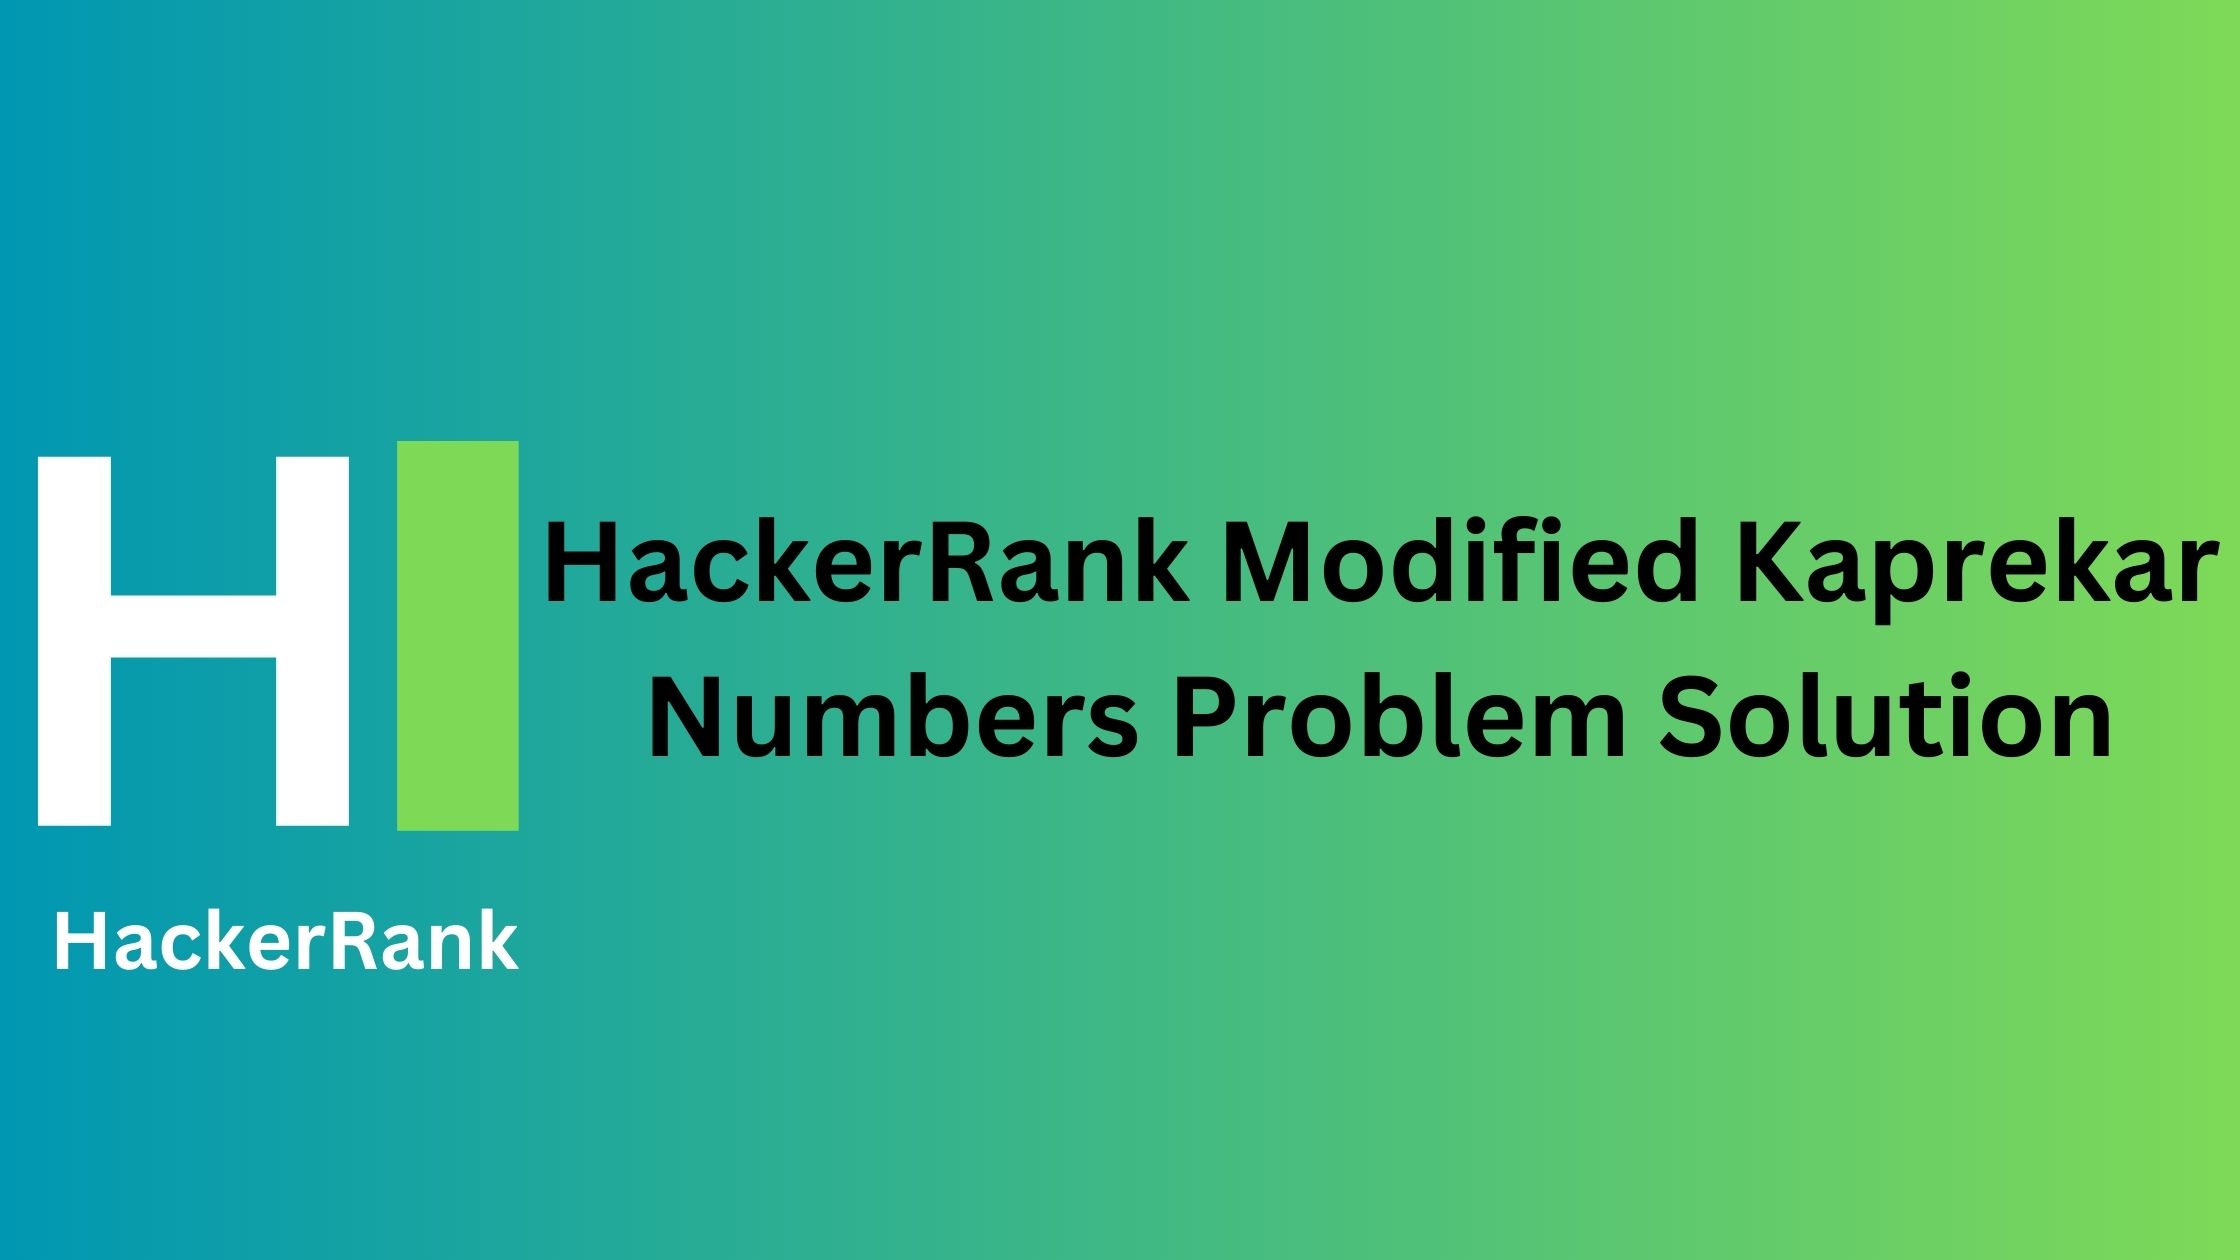 HackerRank Modified Kaprekar Numbers Problem Solution